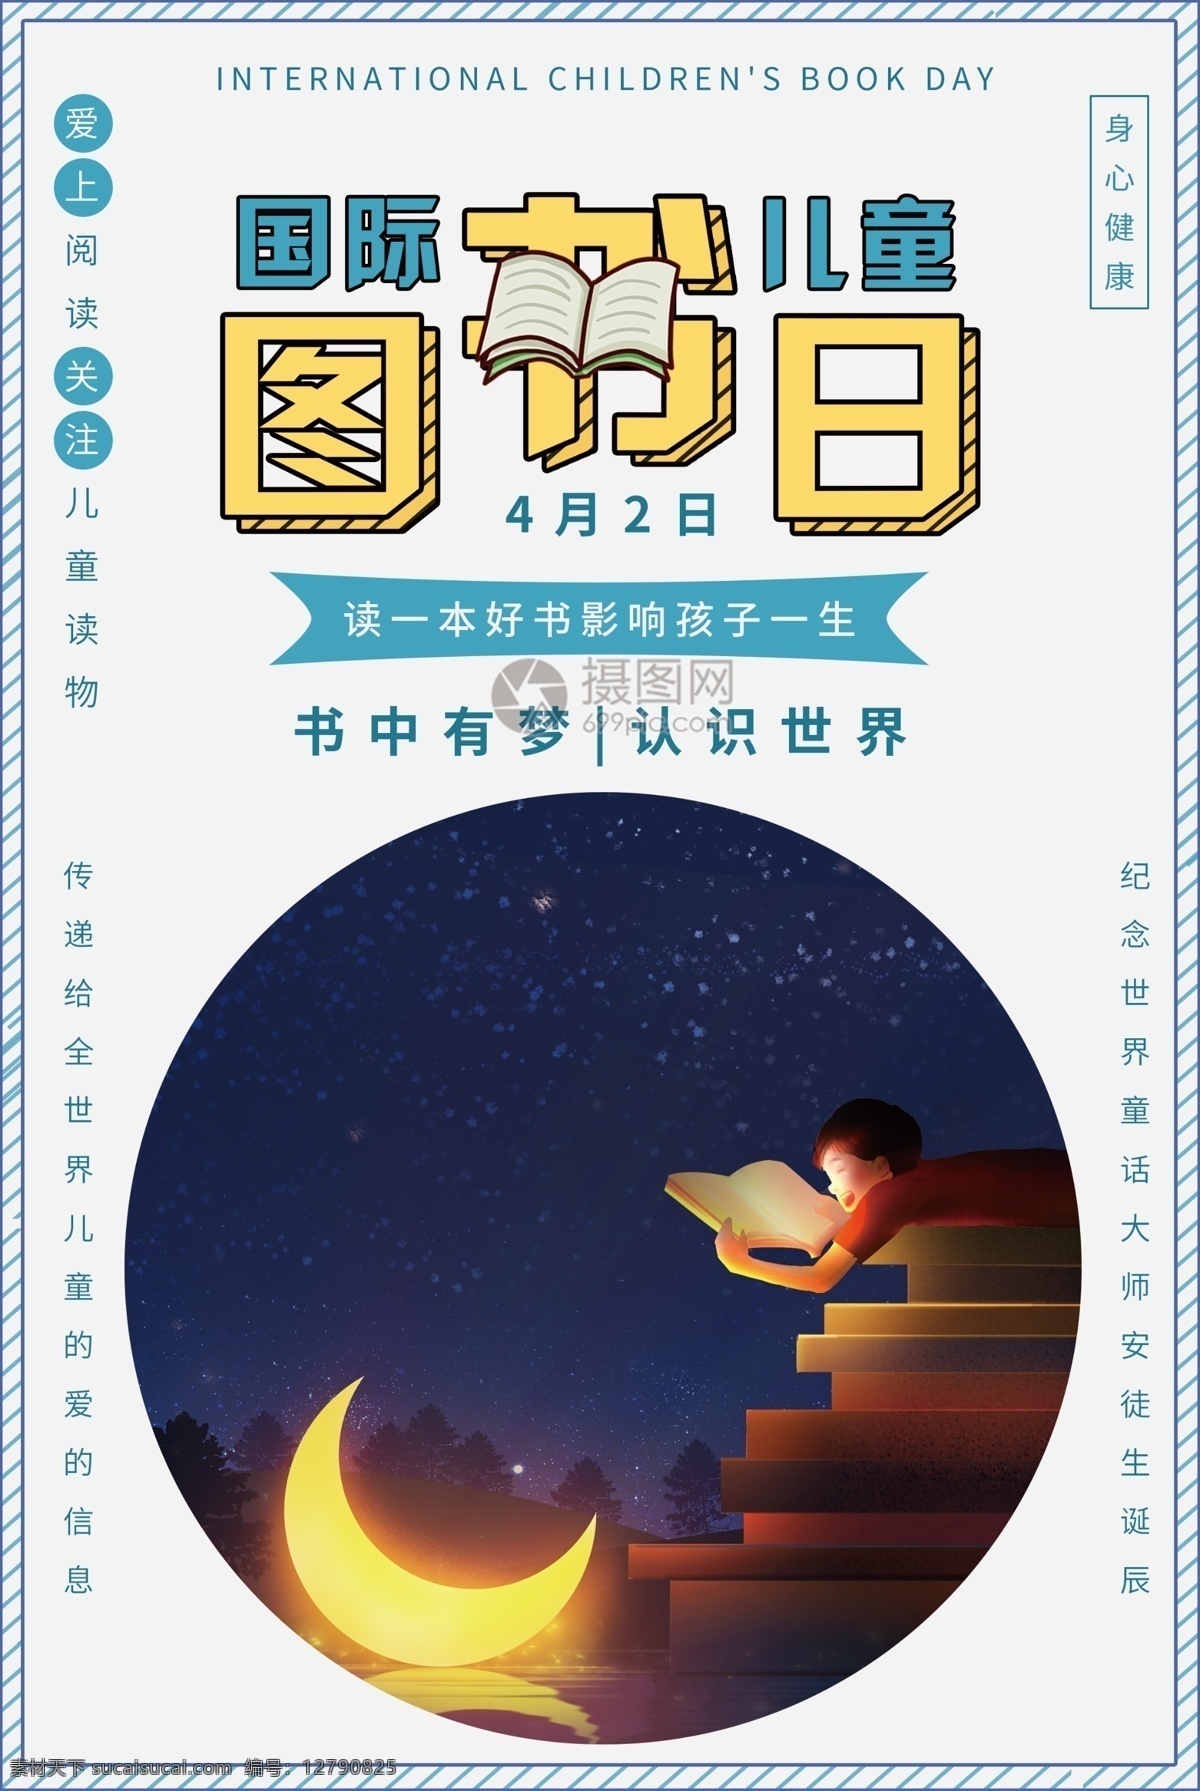 国际 儿童 图书 日 海报 世界 童年 孩子 看书 读书 阅读 书籍 文学 绘本 成长 教育 身心健康 男孩 夜晚 月亮 手绘 插画